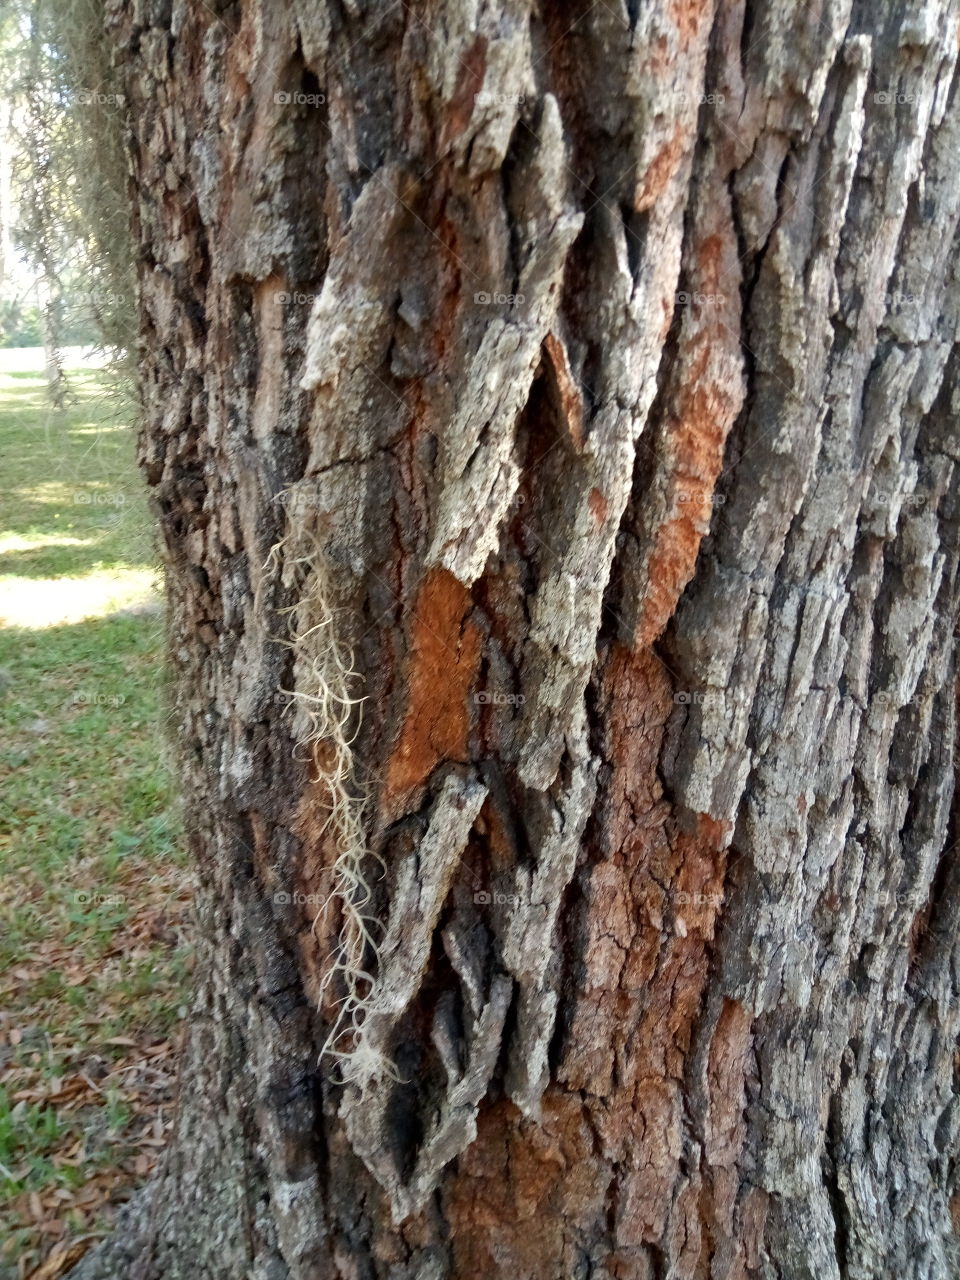 Florida oak